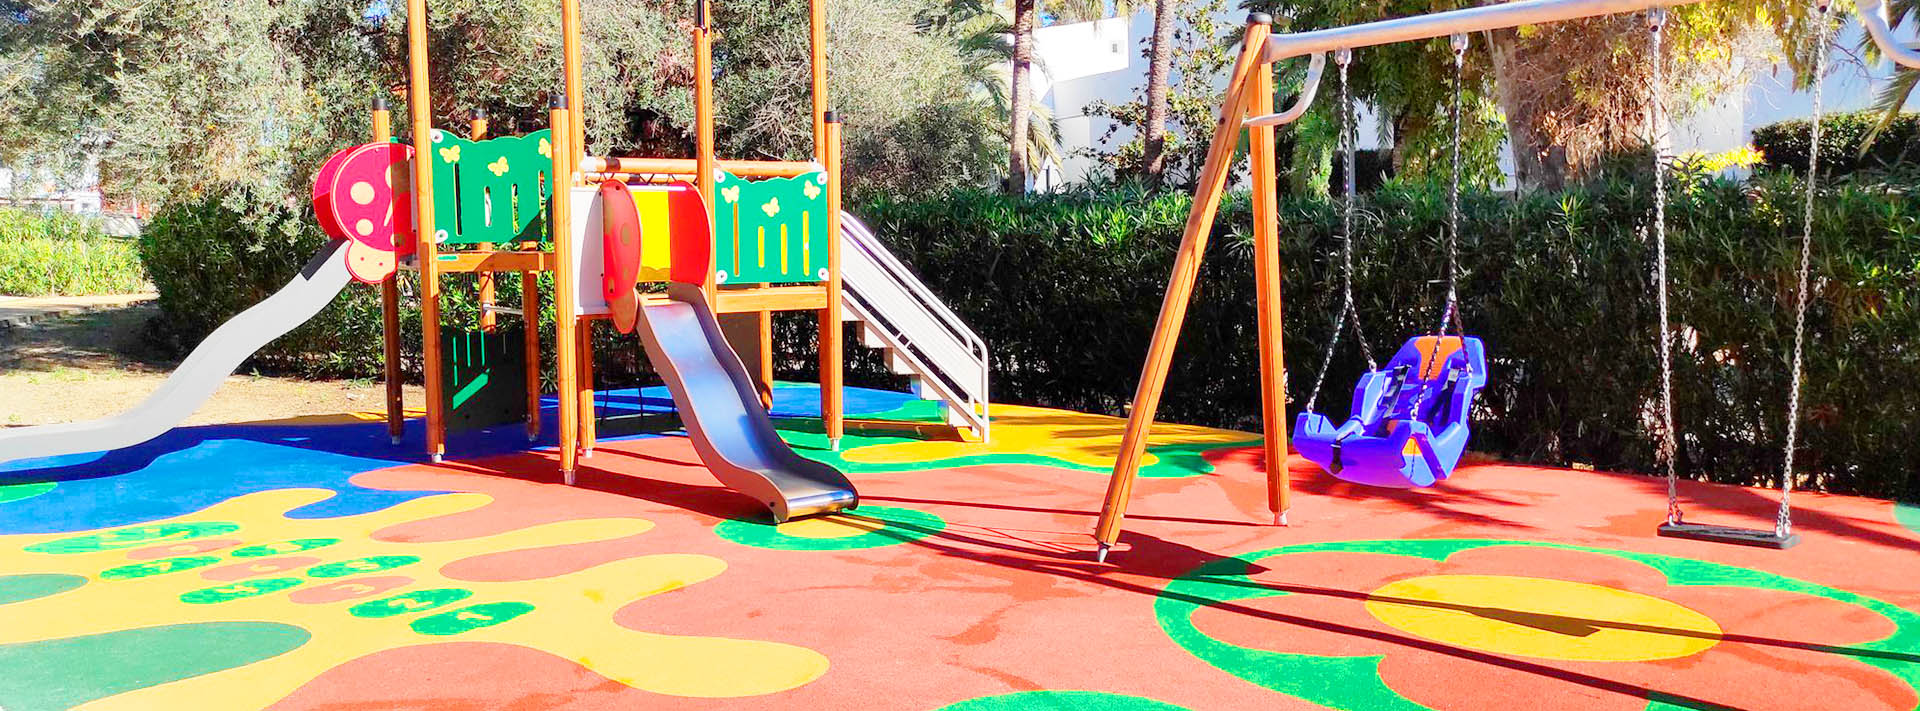 Nuevo parque infantil adaptado en la zona de Guadalmina